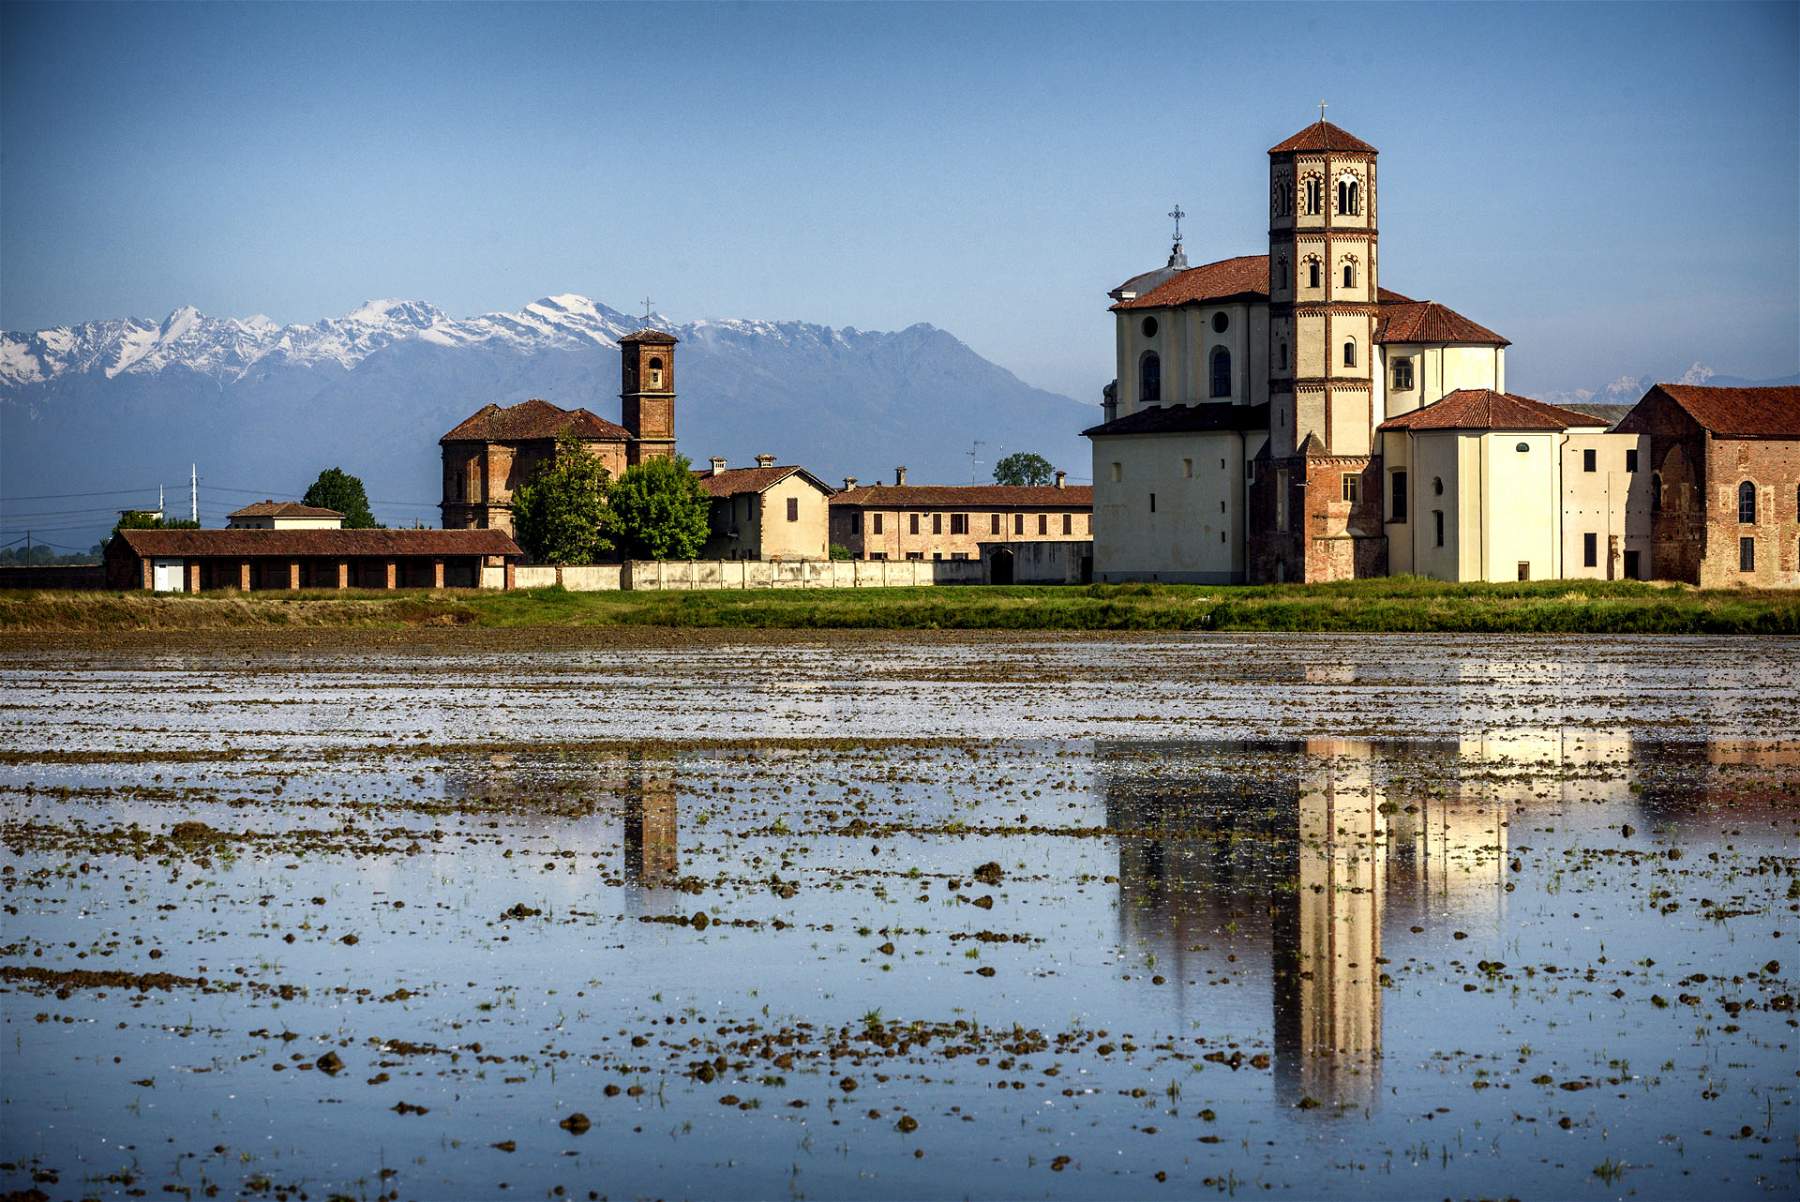 Vercelli, cinq belles églises paroissiales entourées de rizières